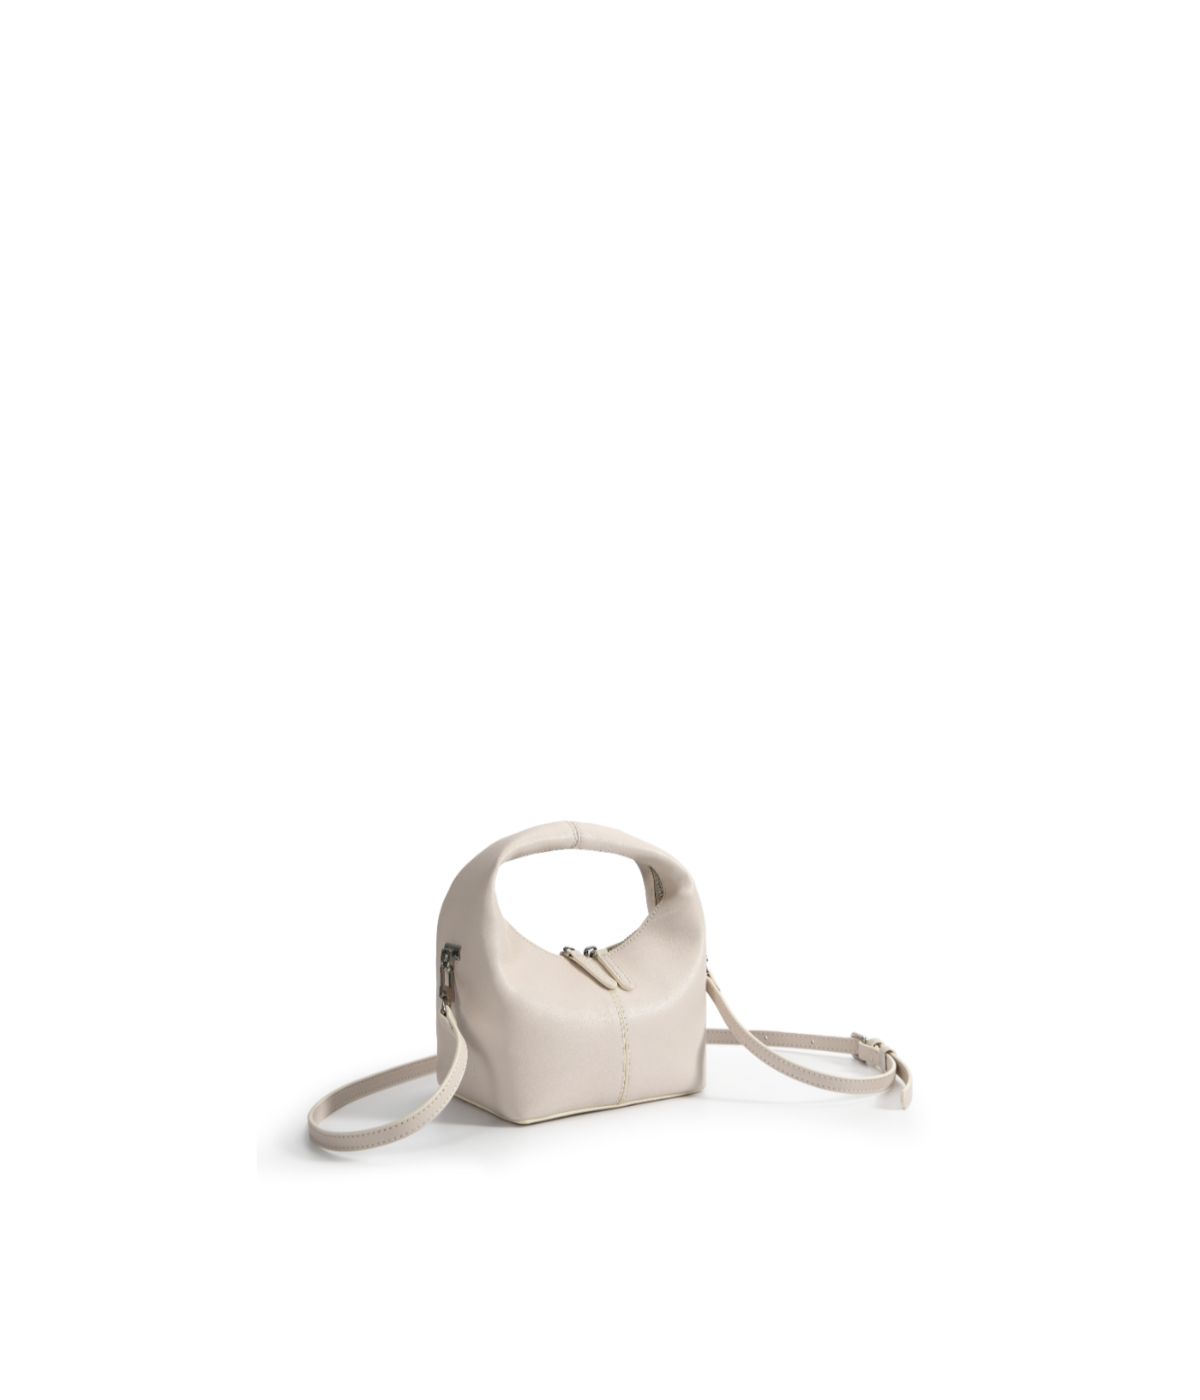 Rebecca Small Cutie Leather Bag White